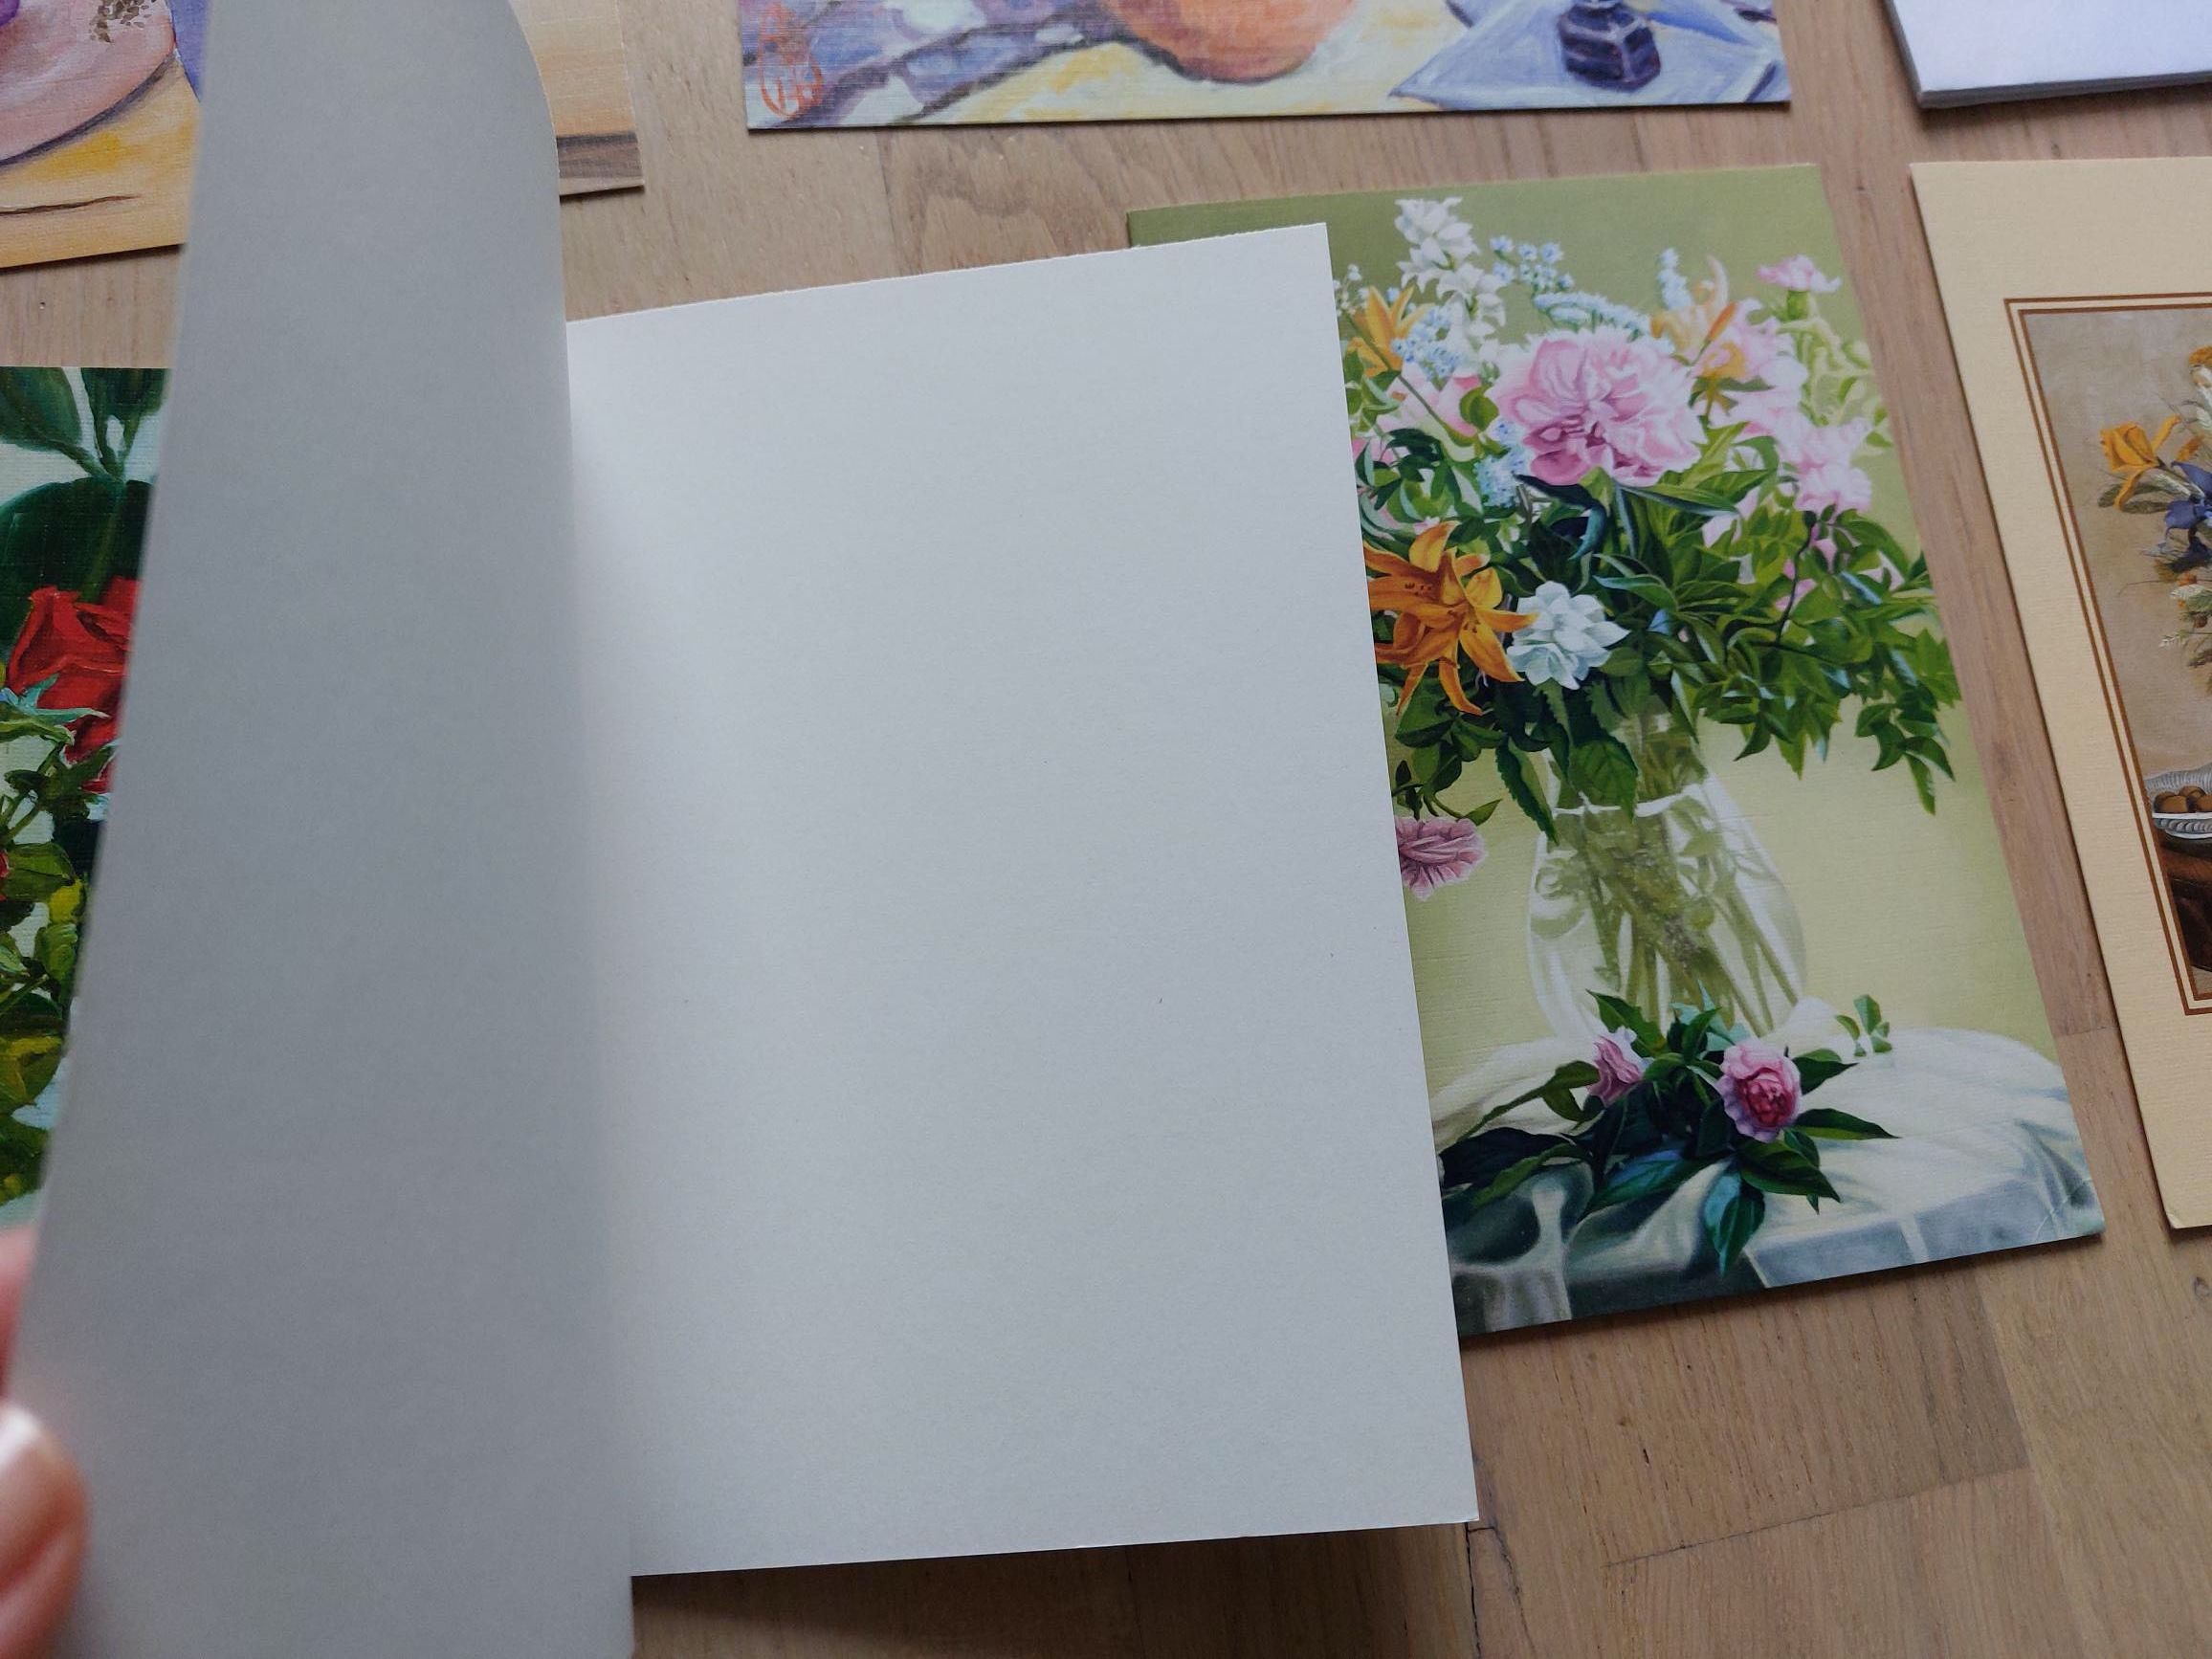 kartki kwiaty imieninowe / okazjonalne z kopertami 6 sztuk